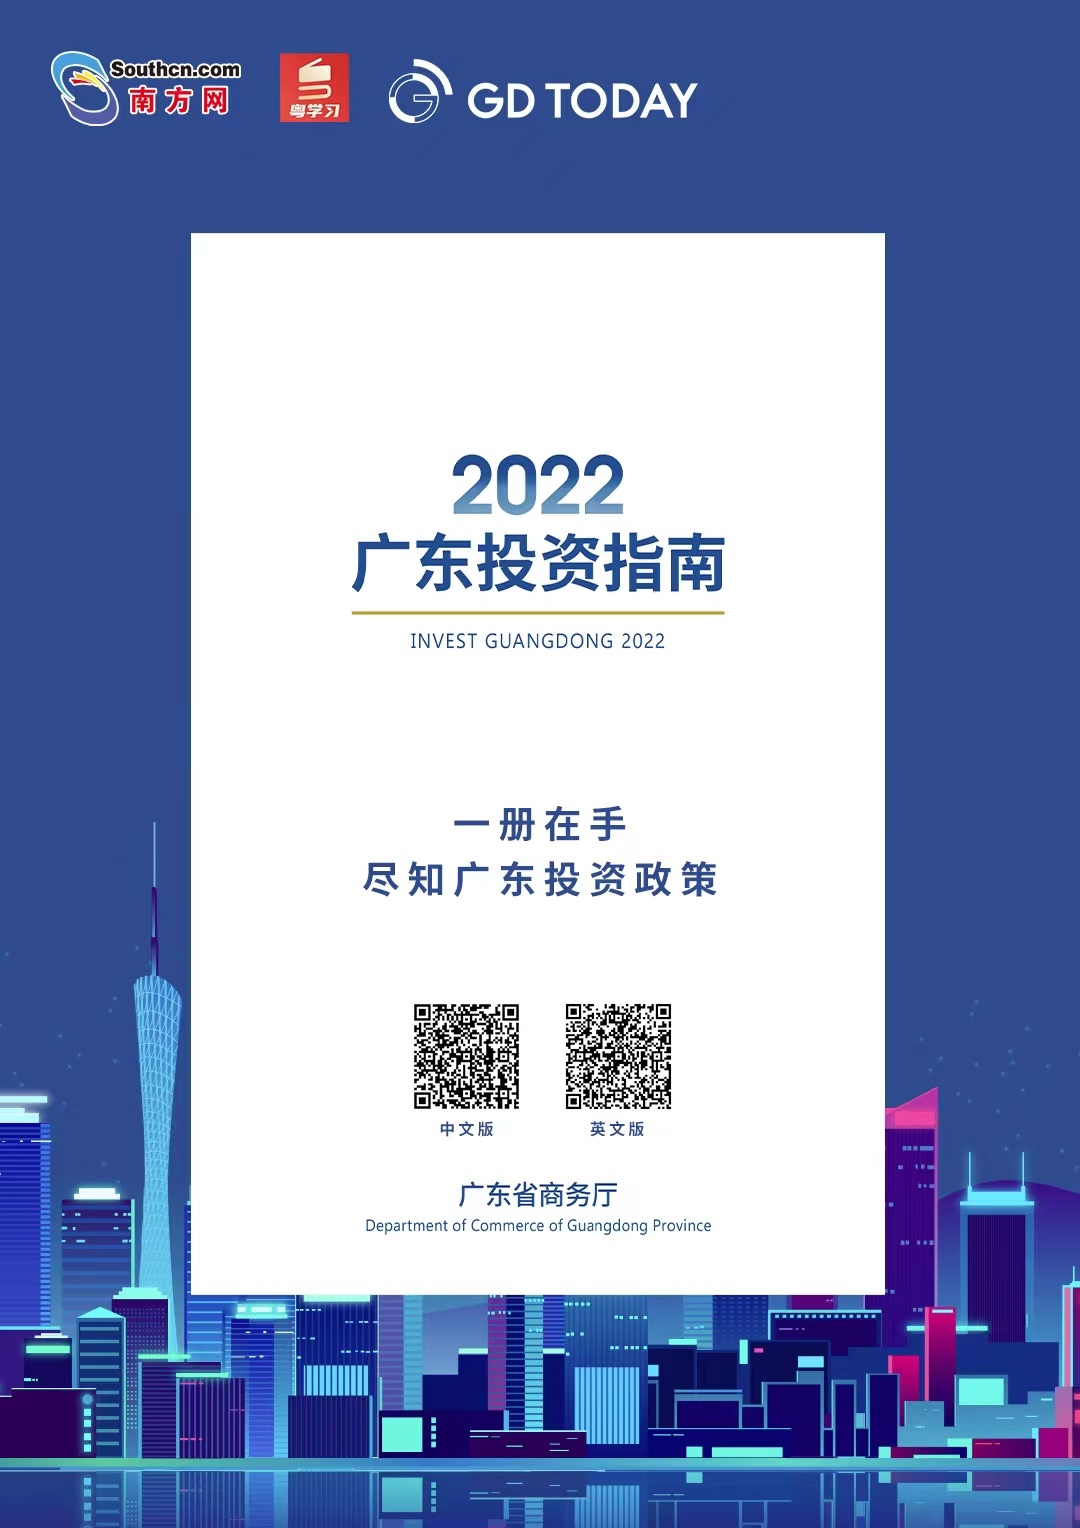 《2022广东投资指南》正式发布！广邀海内外投资者来粤投资